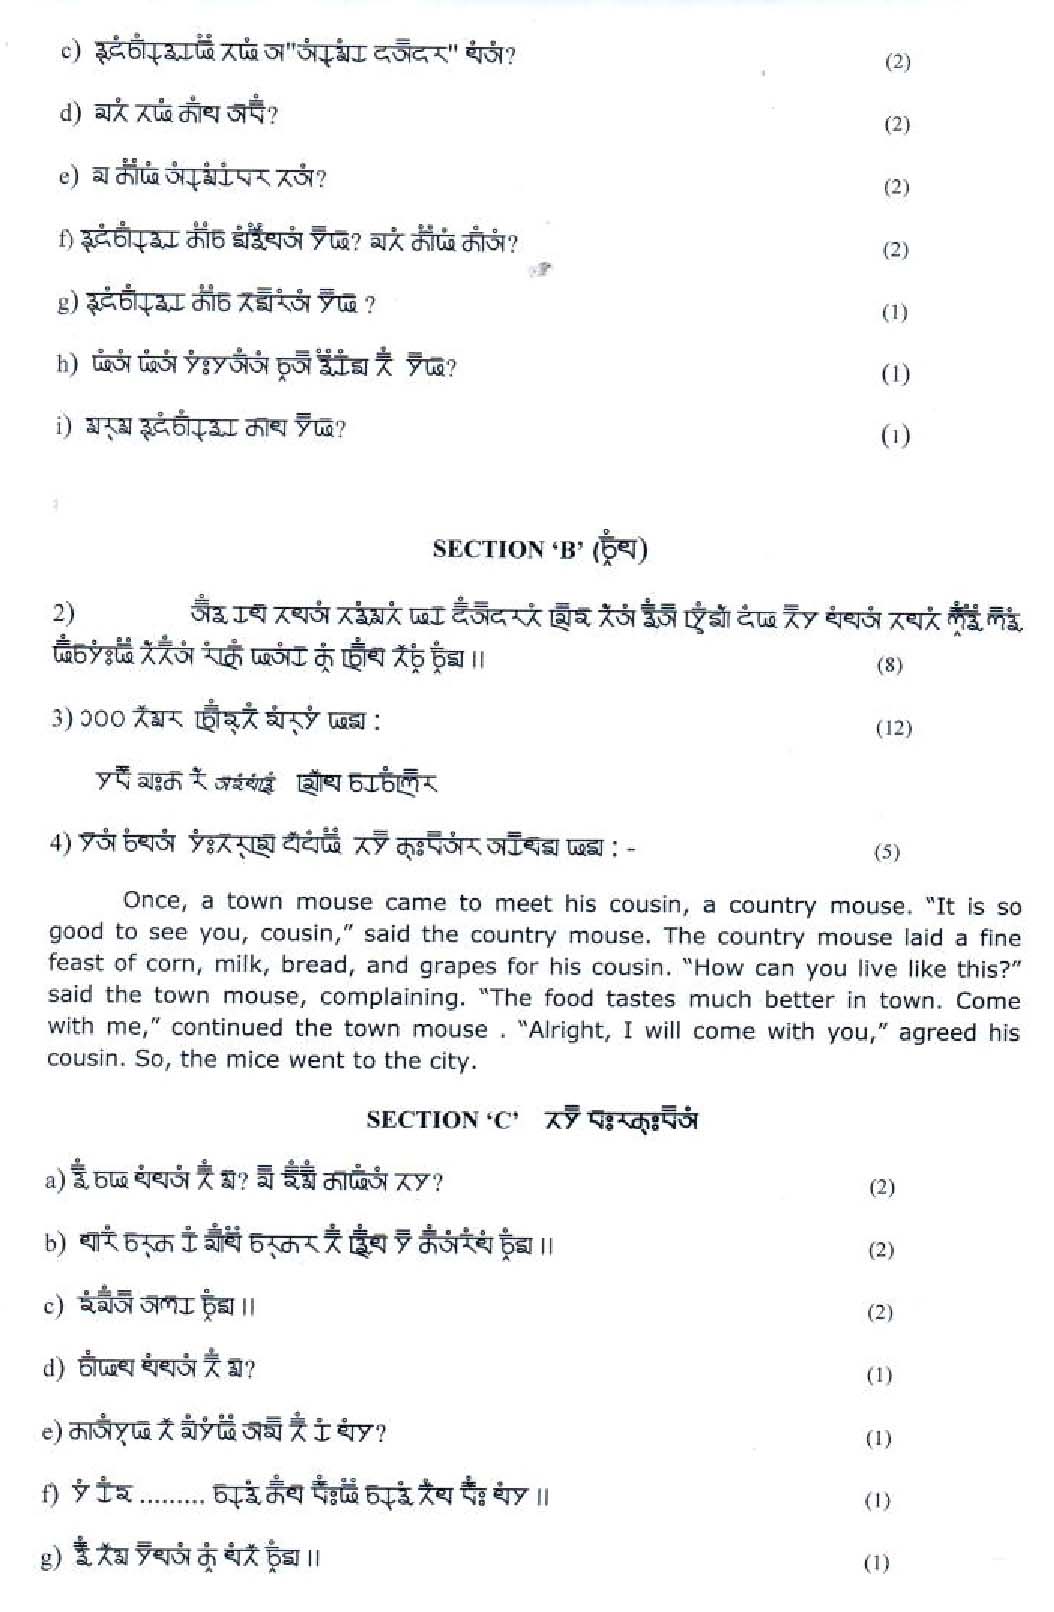 Gurung CBSE Class X Sample Question Paper 2018-19 - Image 2